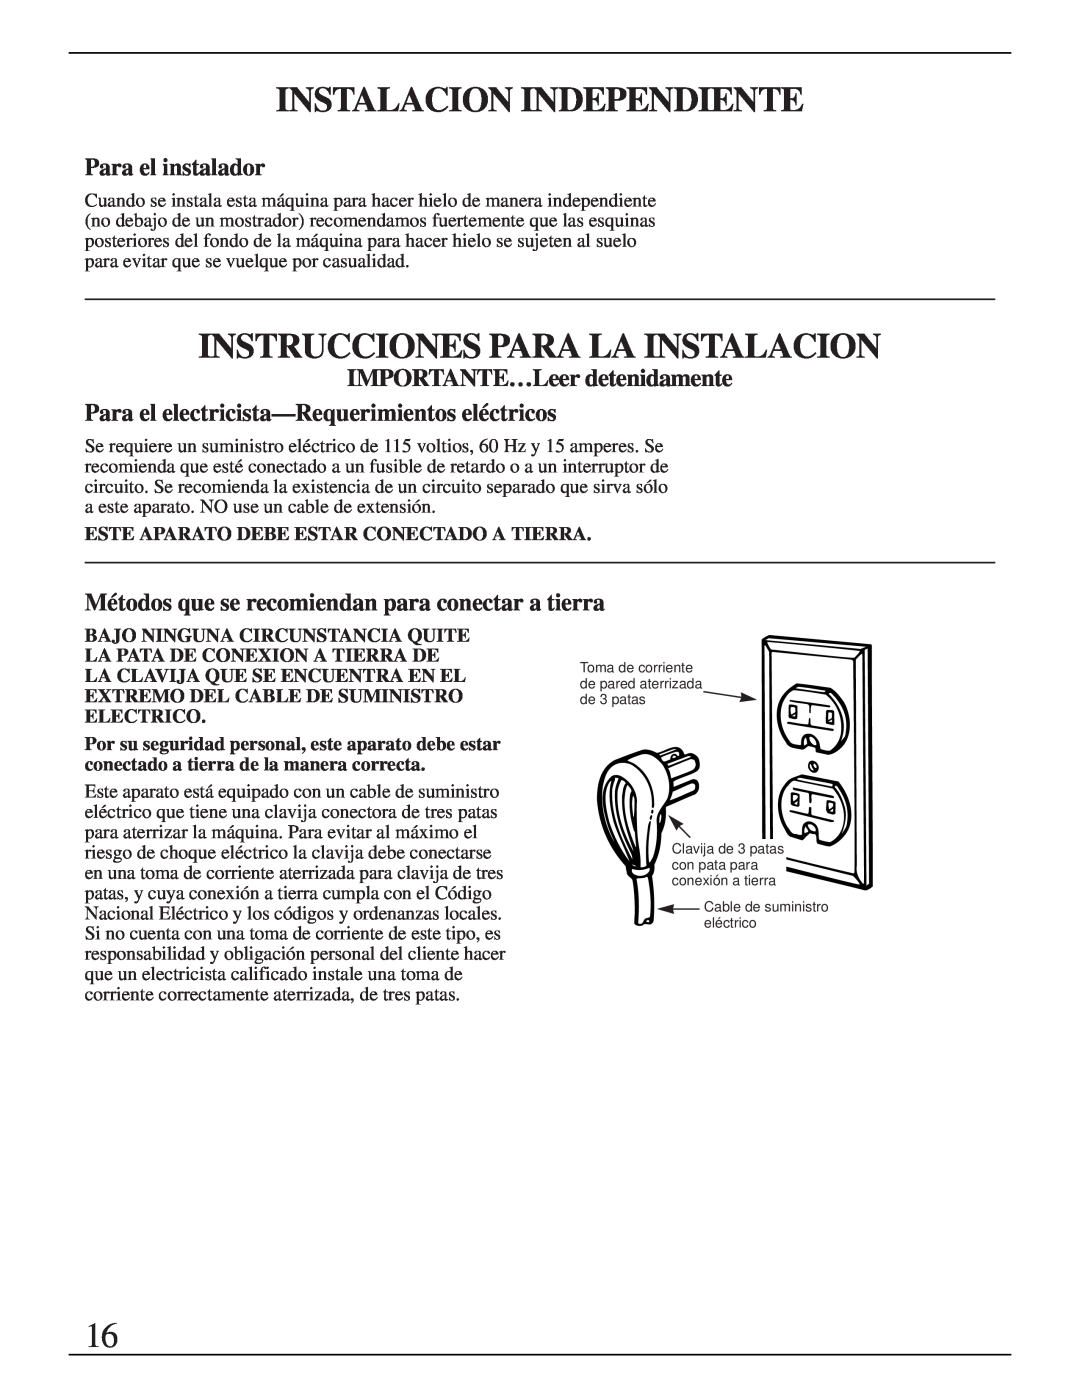 GE Monogram ZDIB50 Instalacion Independiente, Instrucciones Para La Instalacion, Para el instalador 